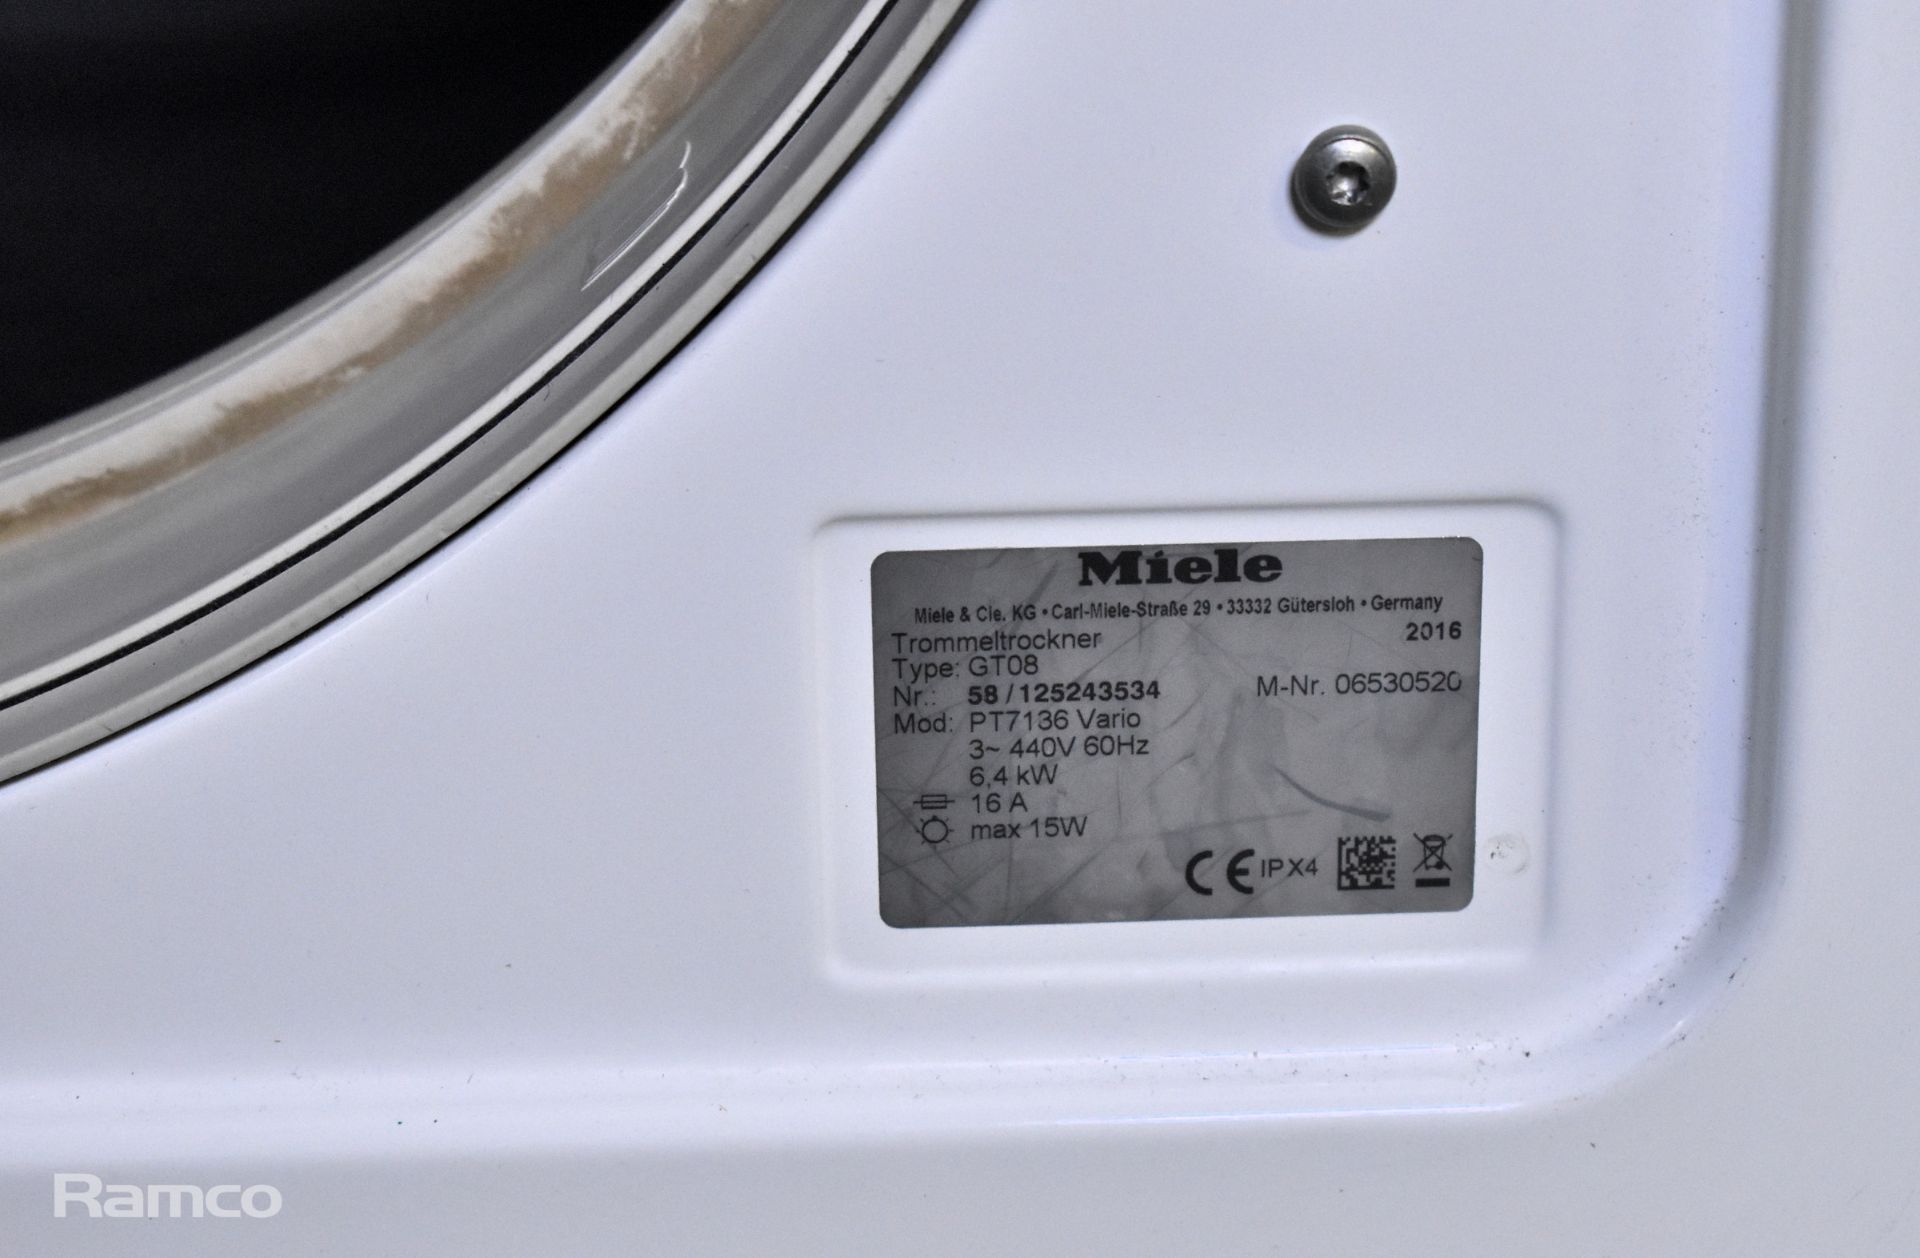 Miele Professional PT 7136 Vario tumble dryer - 400V - W 600 x D 700 x H 850mm - Bild 4 aus 5